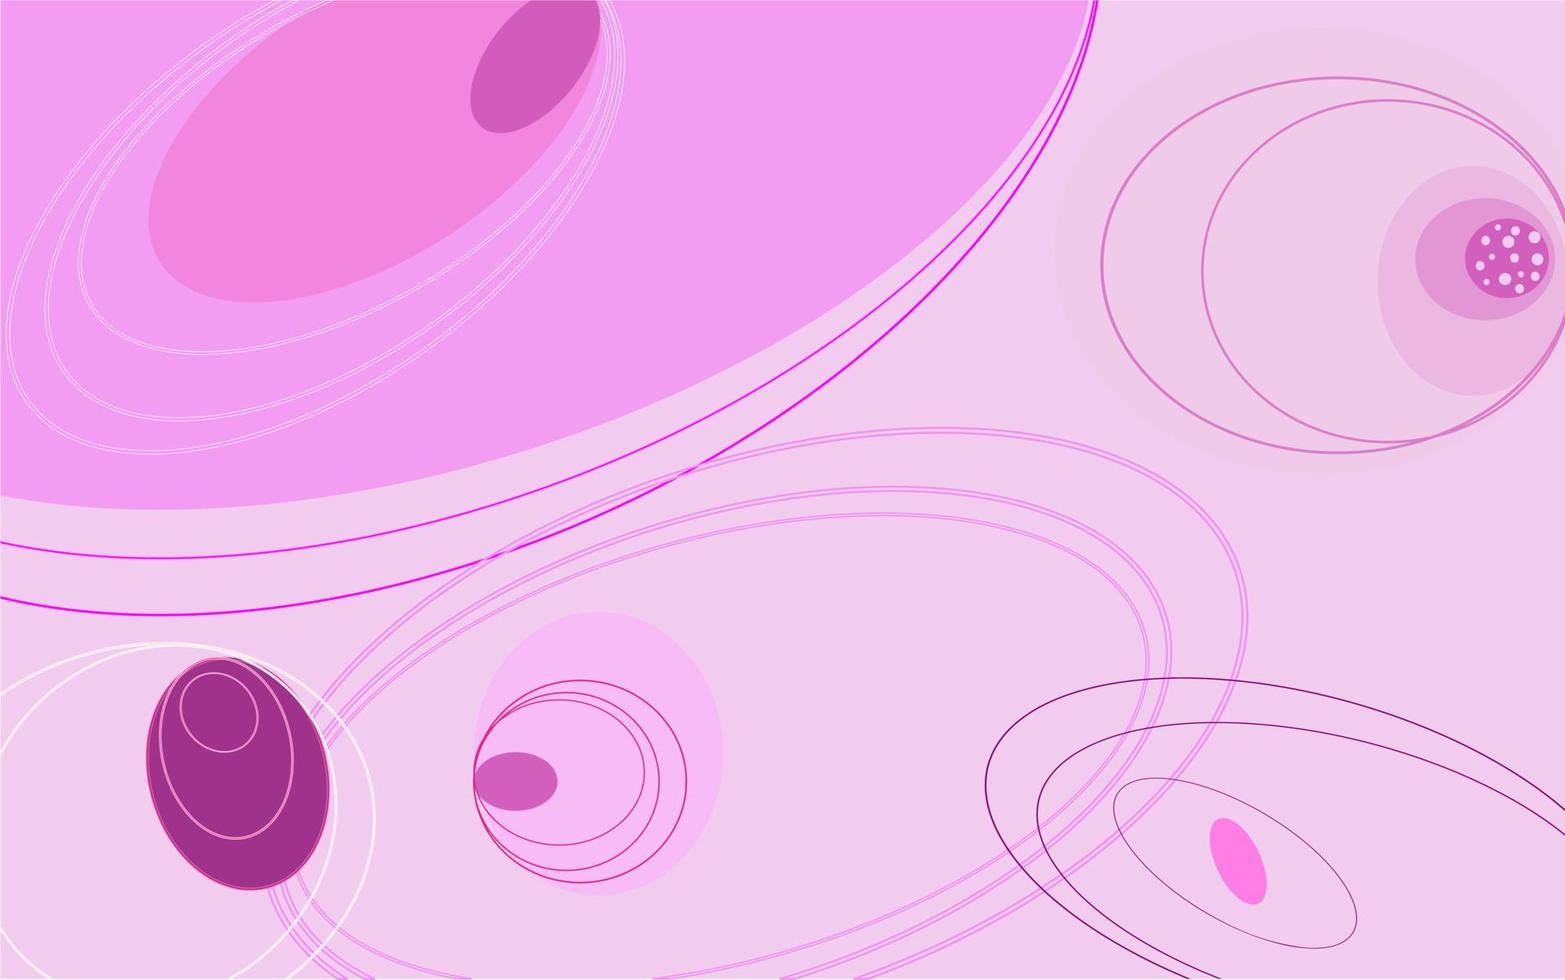 abstrakt rosa till violett ton bakgrund, vektordesign. cirkel, elliptisk form. vektor